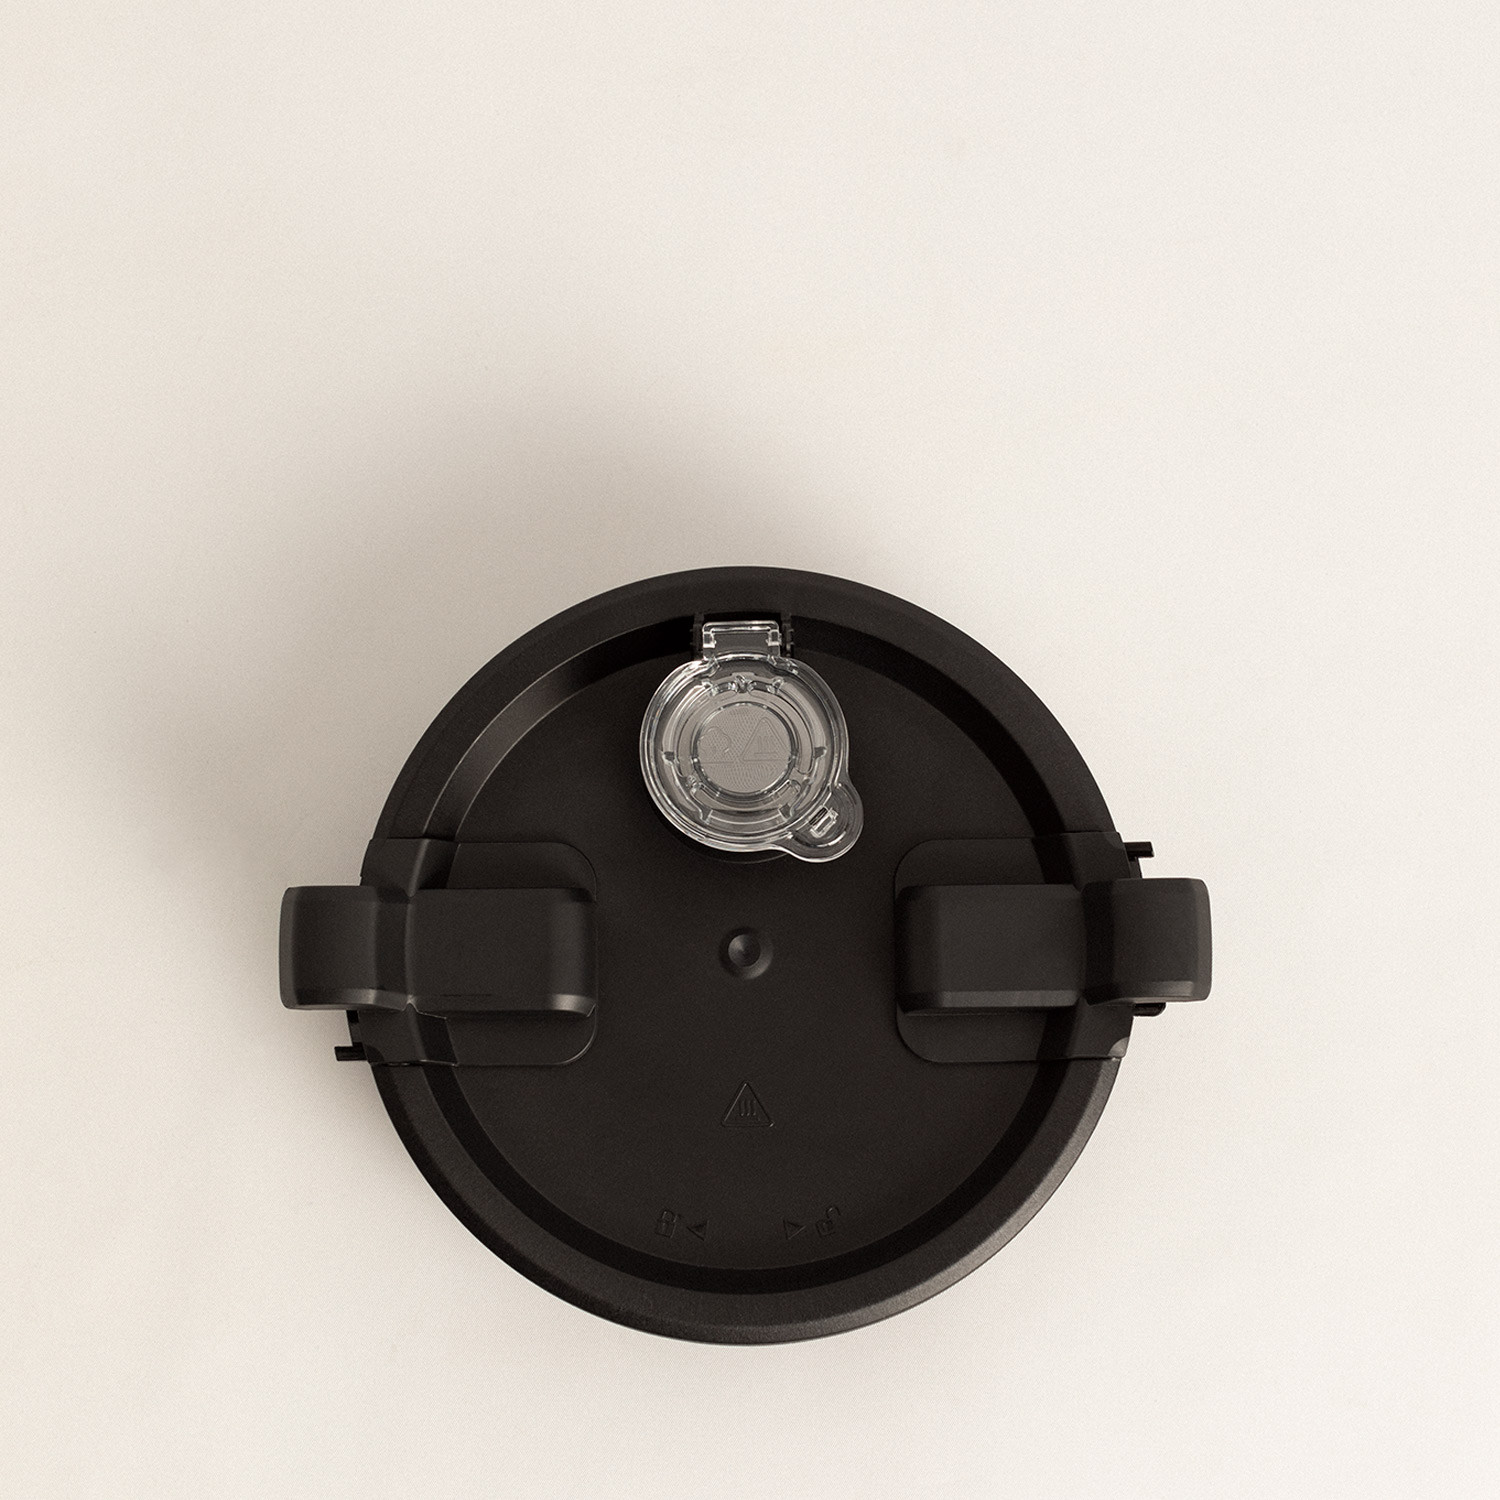 CHEFBOT TOUCH - Smart Kitchen Robot with Steam Basket